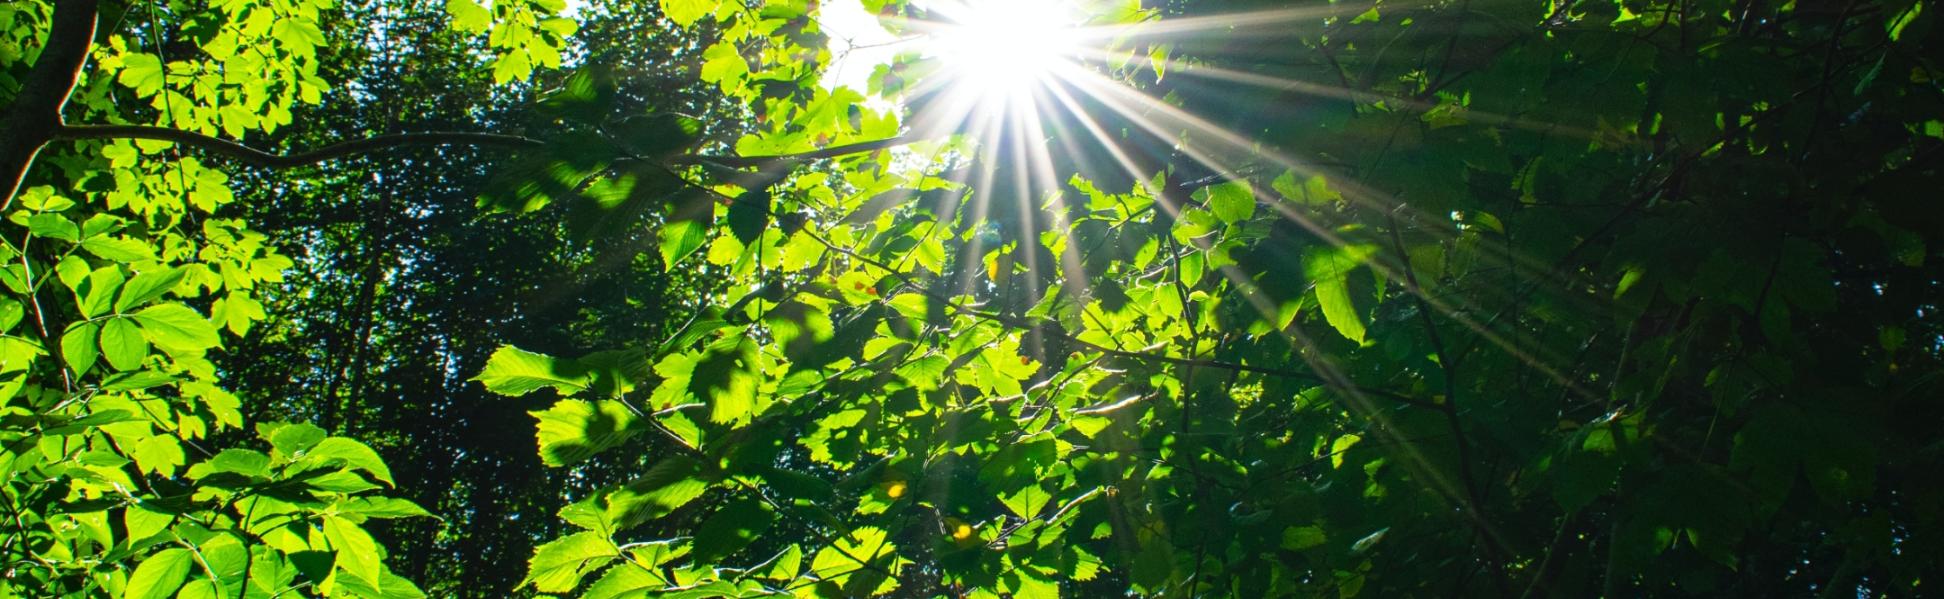 Blick in einen Baum mit hellgrünen Blättern. Die Sonne strahlt dazwischen.